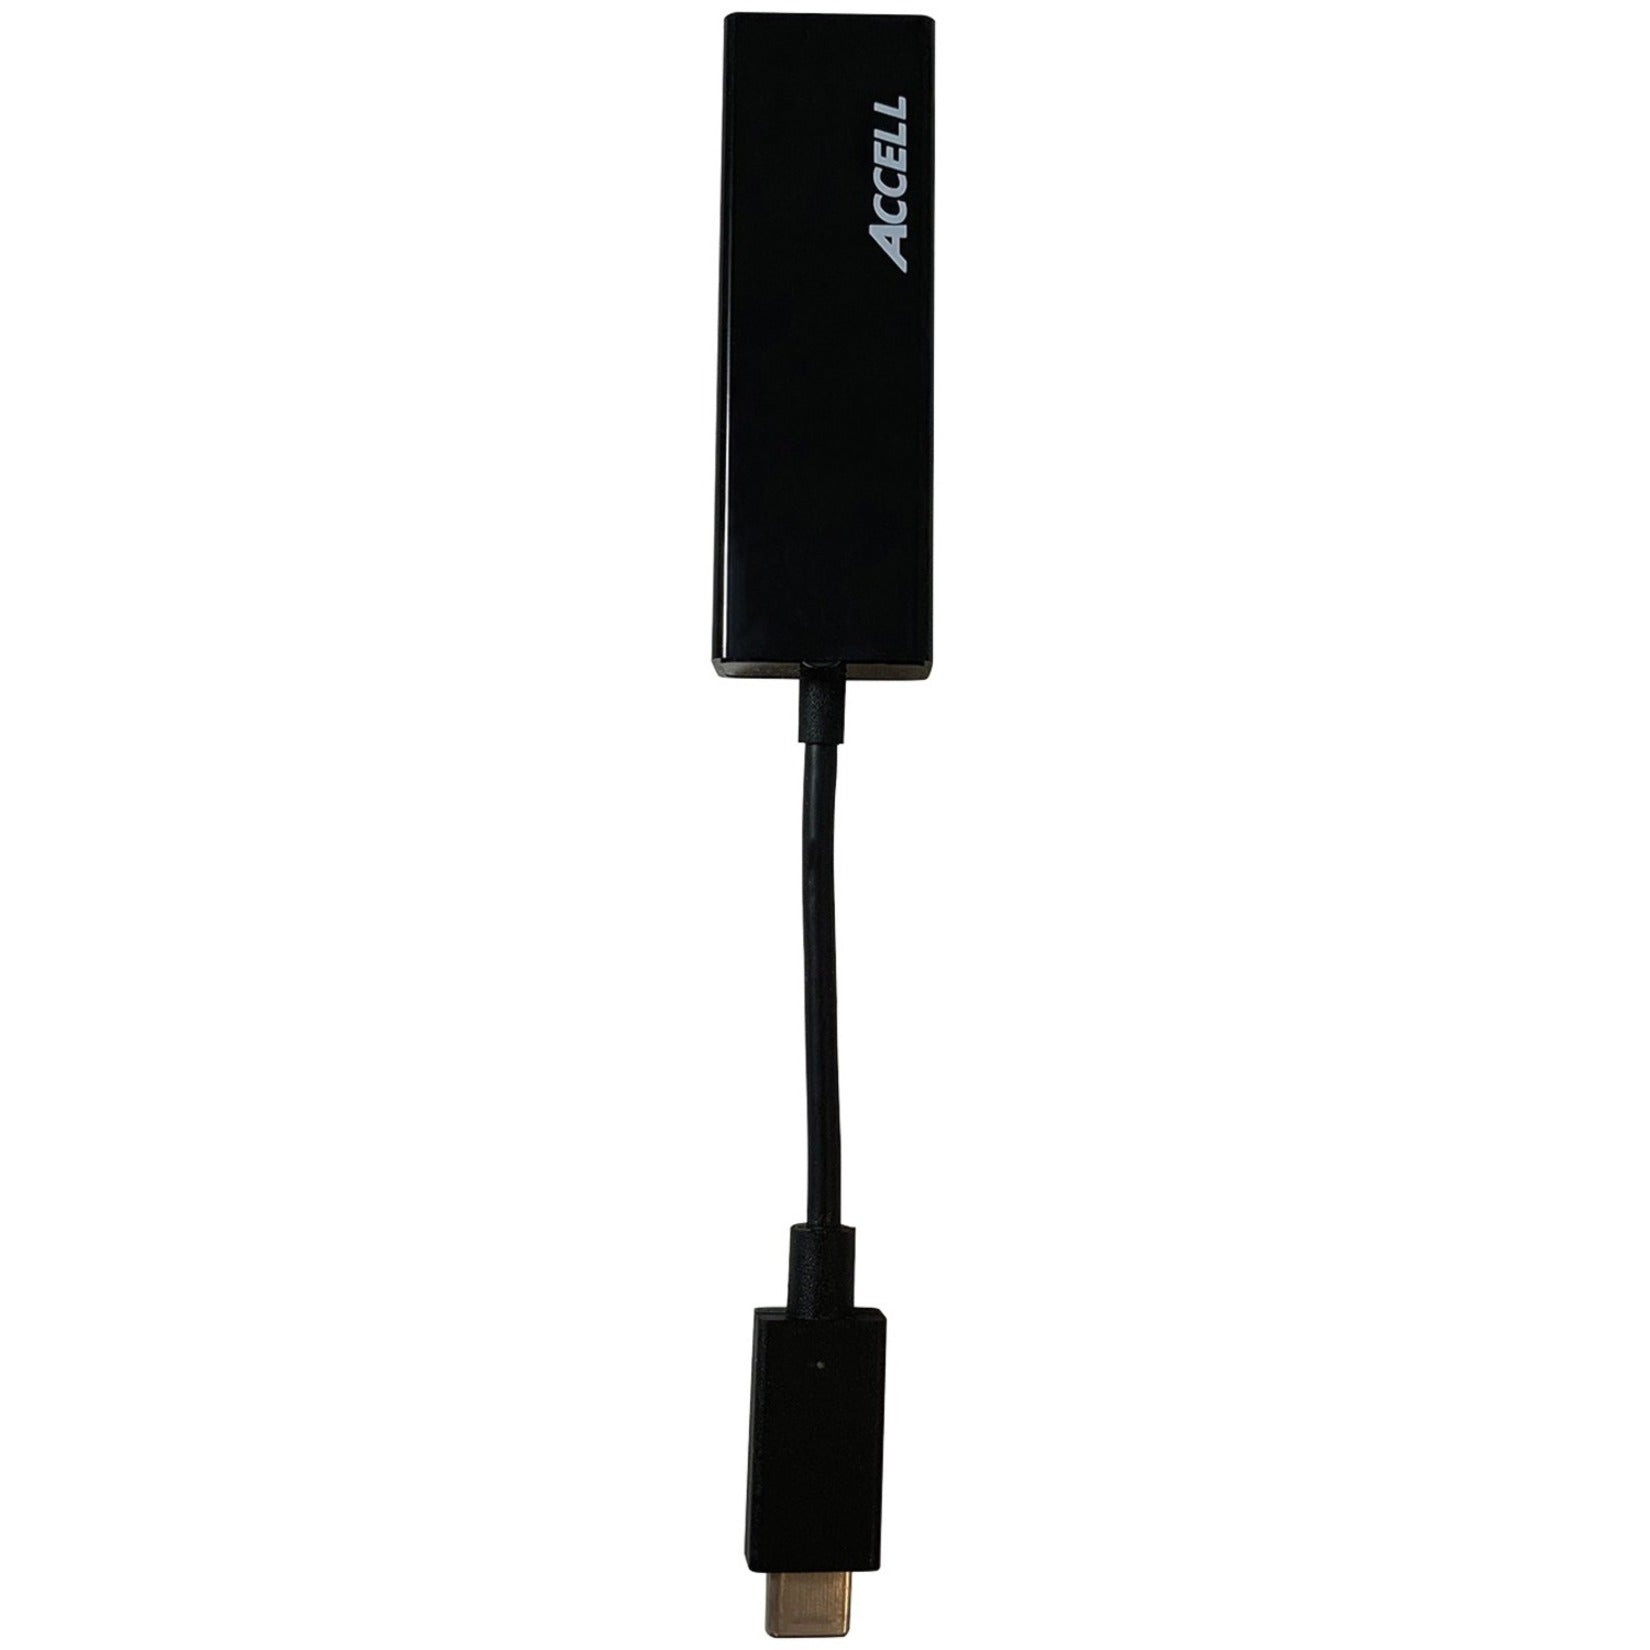 Accell U187B-001B USB-C to Gigabit Ethernet Adapter 2 Year Warranty USB 3.0 Twisted Pair 10/100/1000Base-T  製品名：Accell U187B-001B USB-C ギガビットイーサネットアダプタ、2年保証、USB 3.0、ツイステッドペア、10/100/1000Base-T